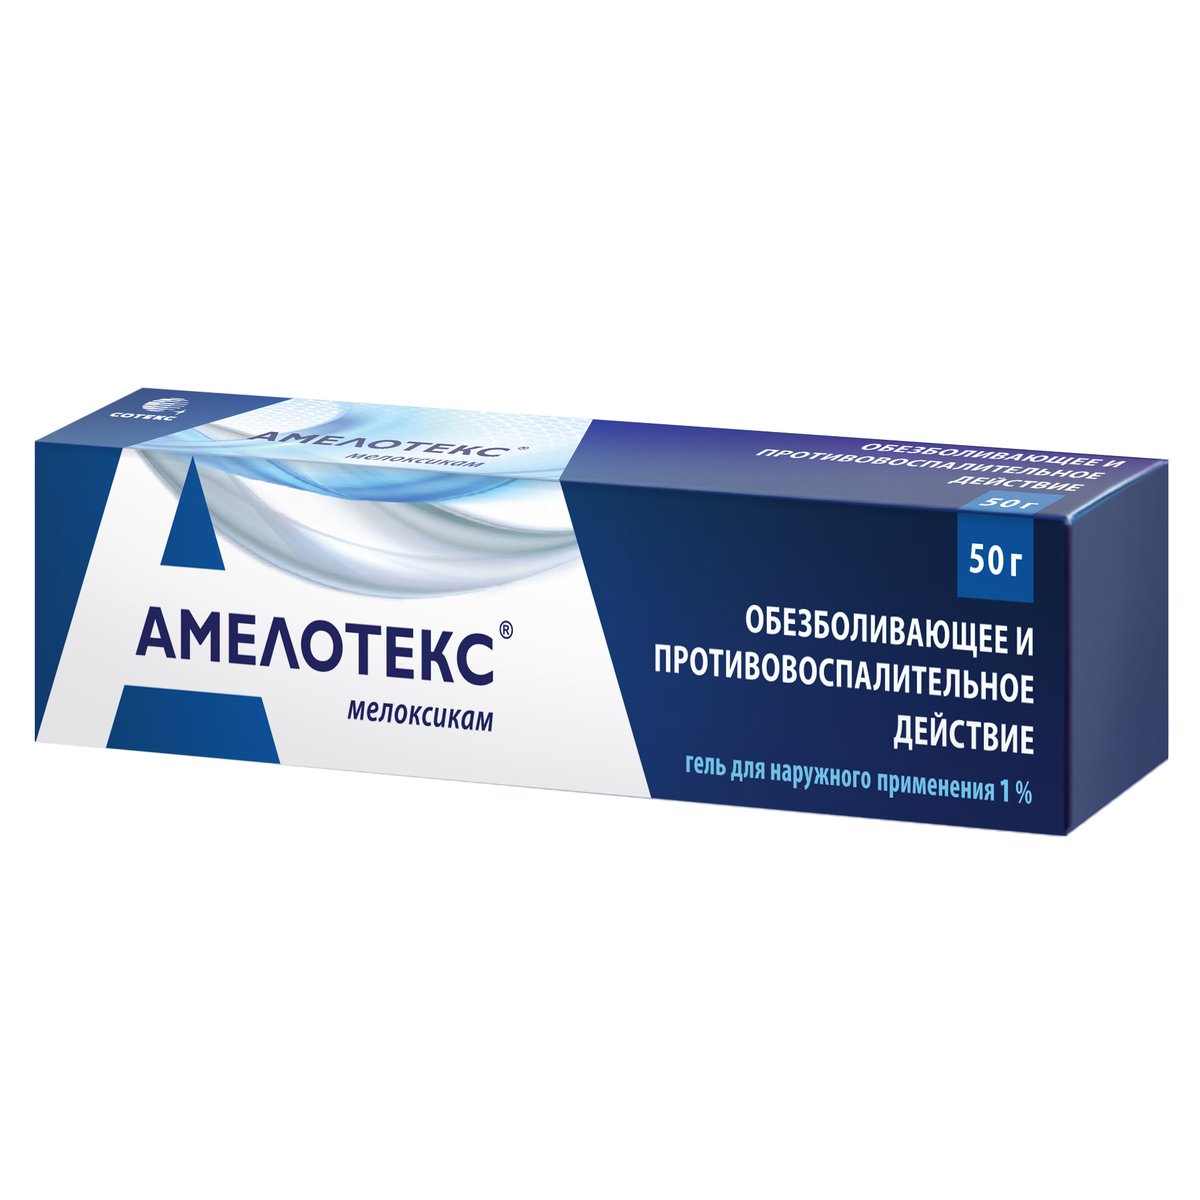 Амелотекс (гель, 50 г, 1 1%, для наружного применения) - цена,  .